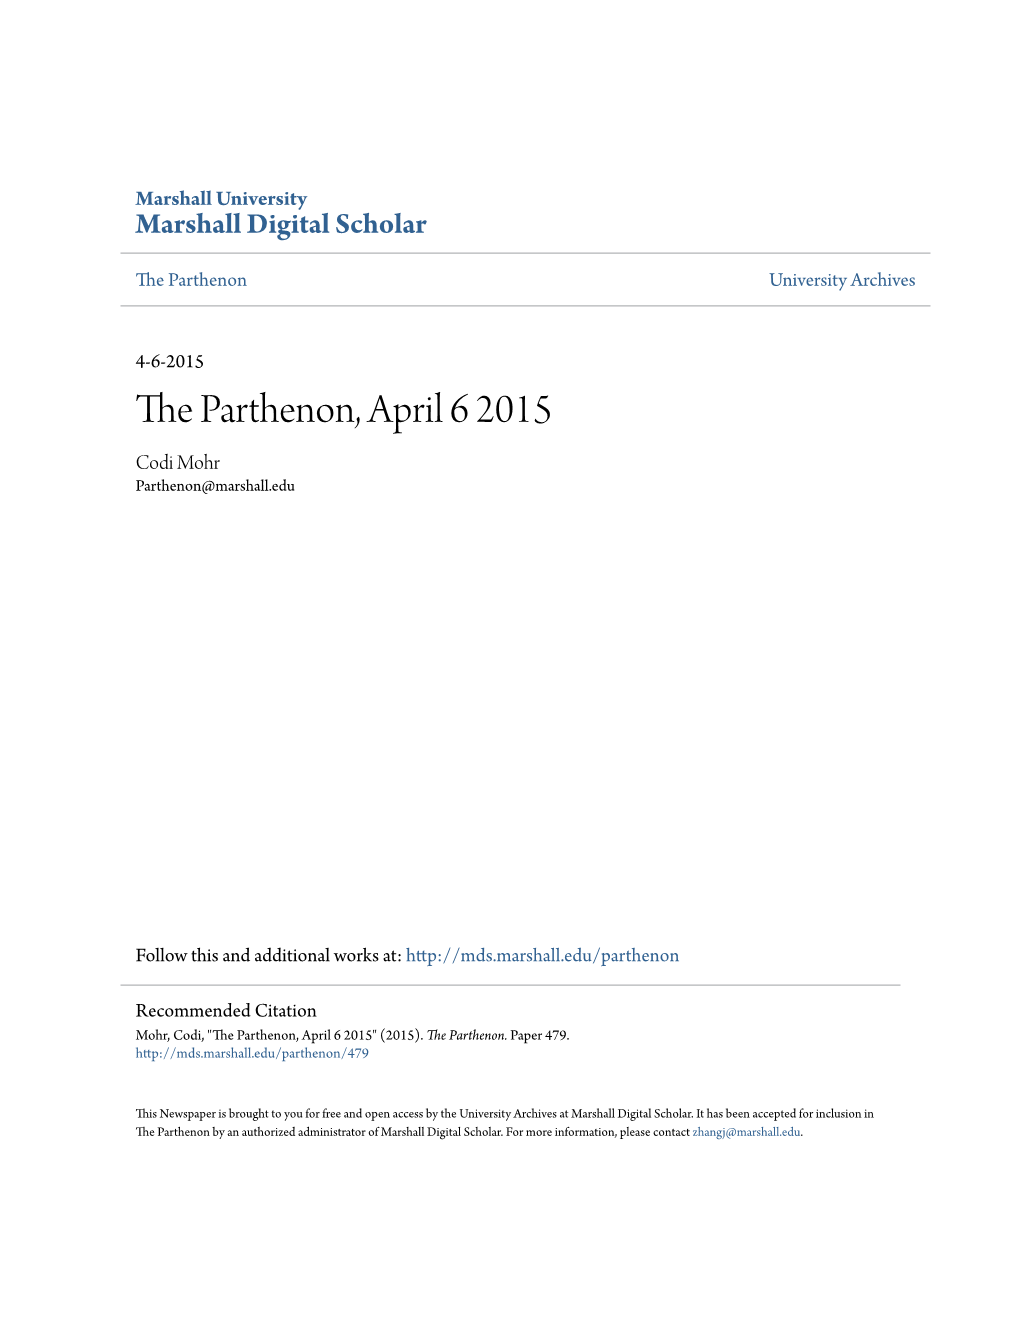 The Parthenon, April 6 2015